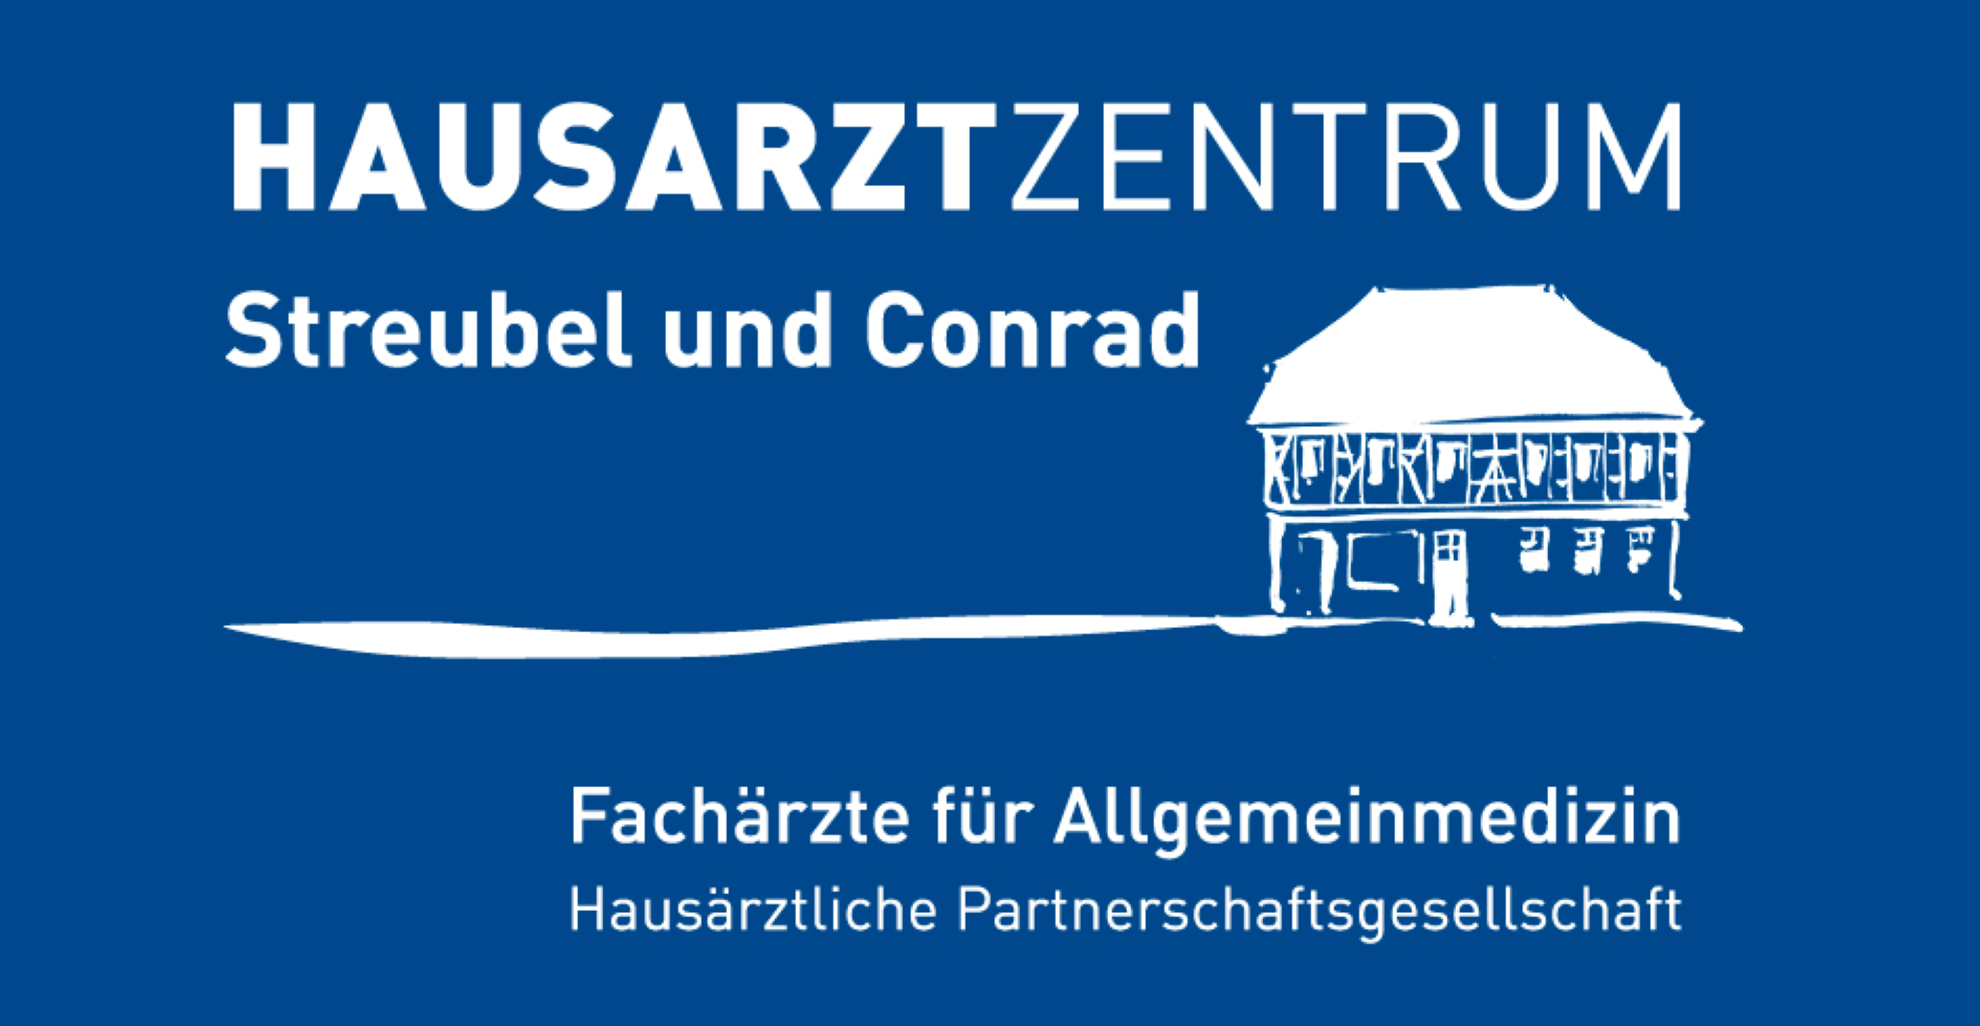 Hausarztzentrum Streubel & Conrad